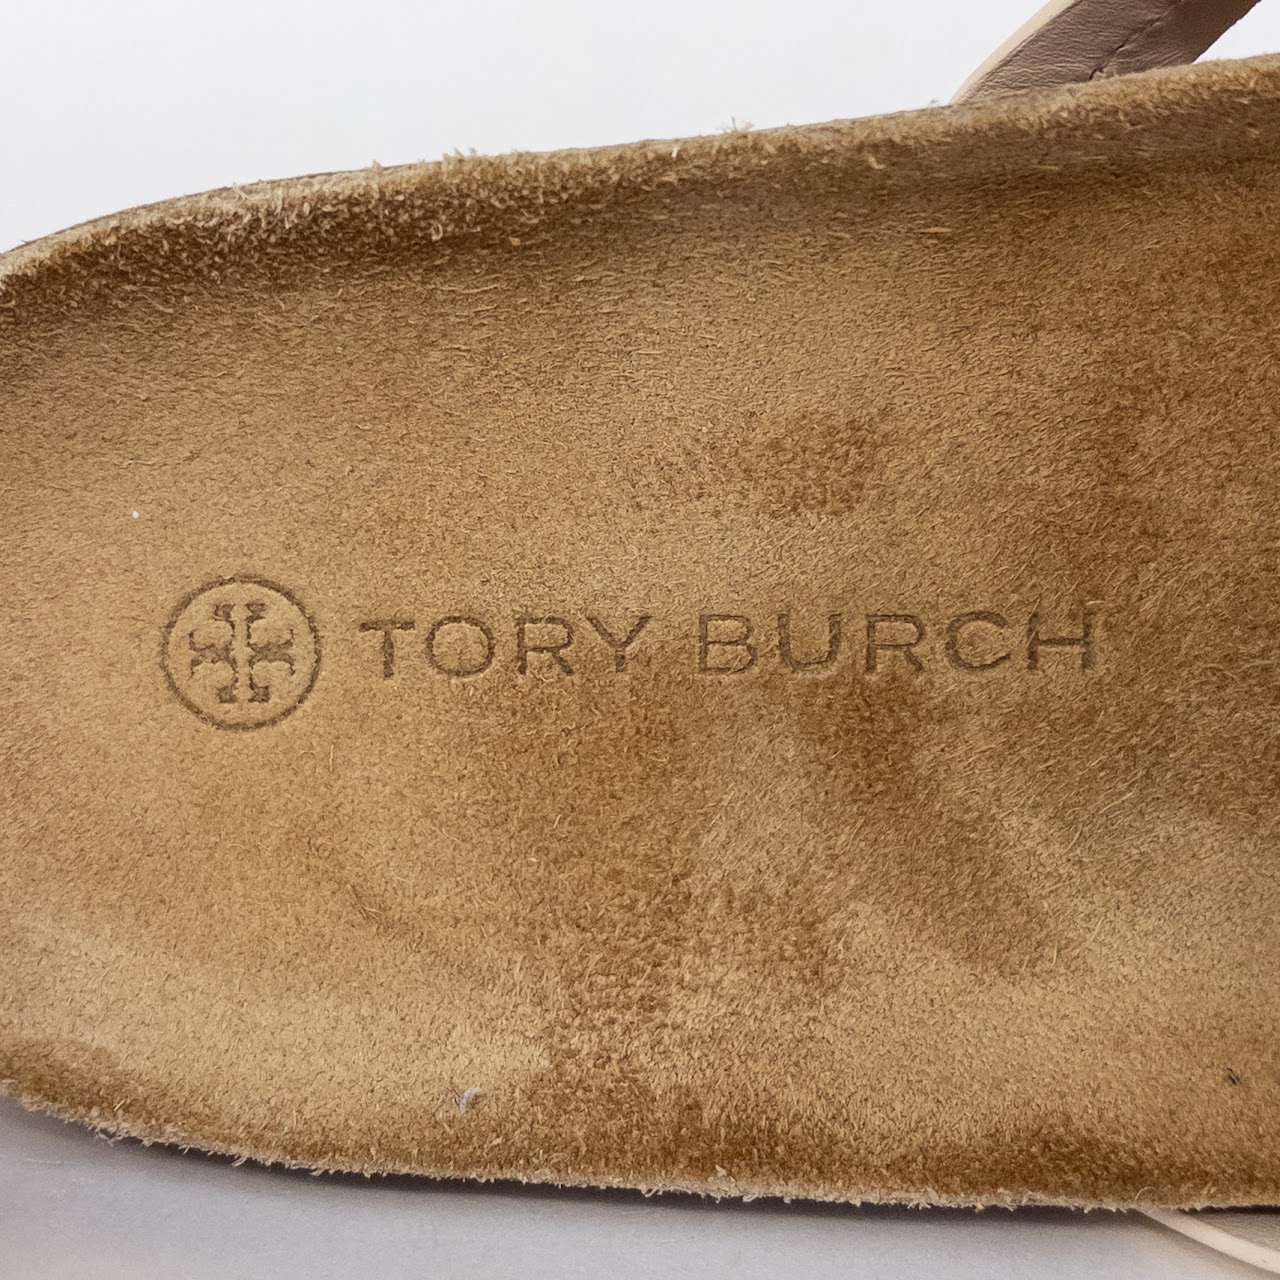 Tory Burch Miller Cloud Cork Sandals